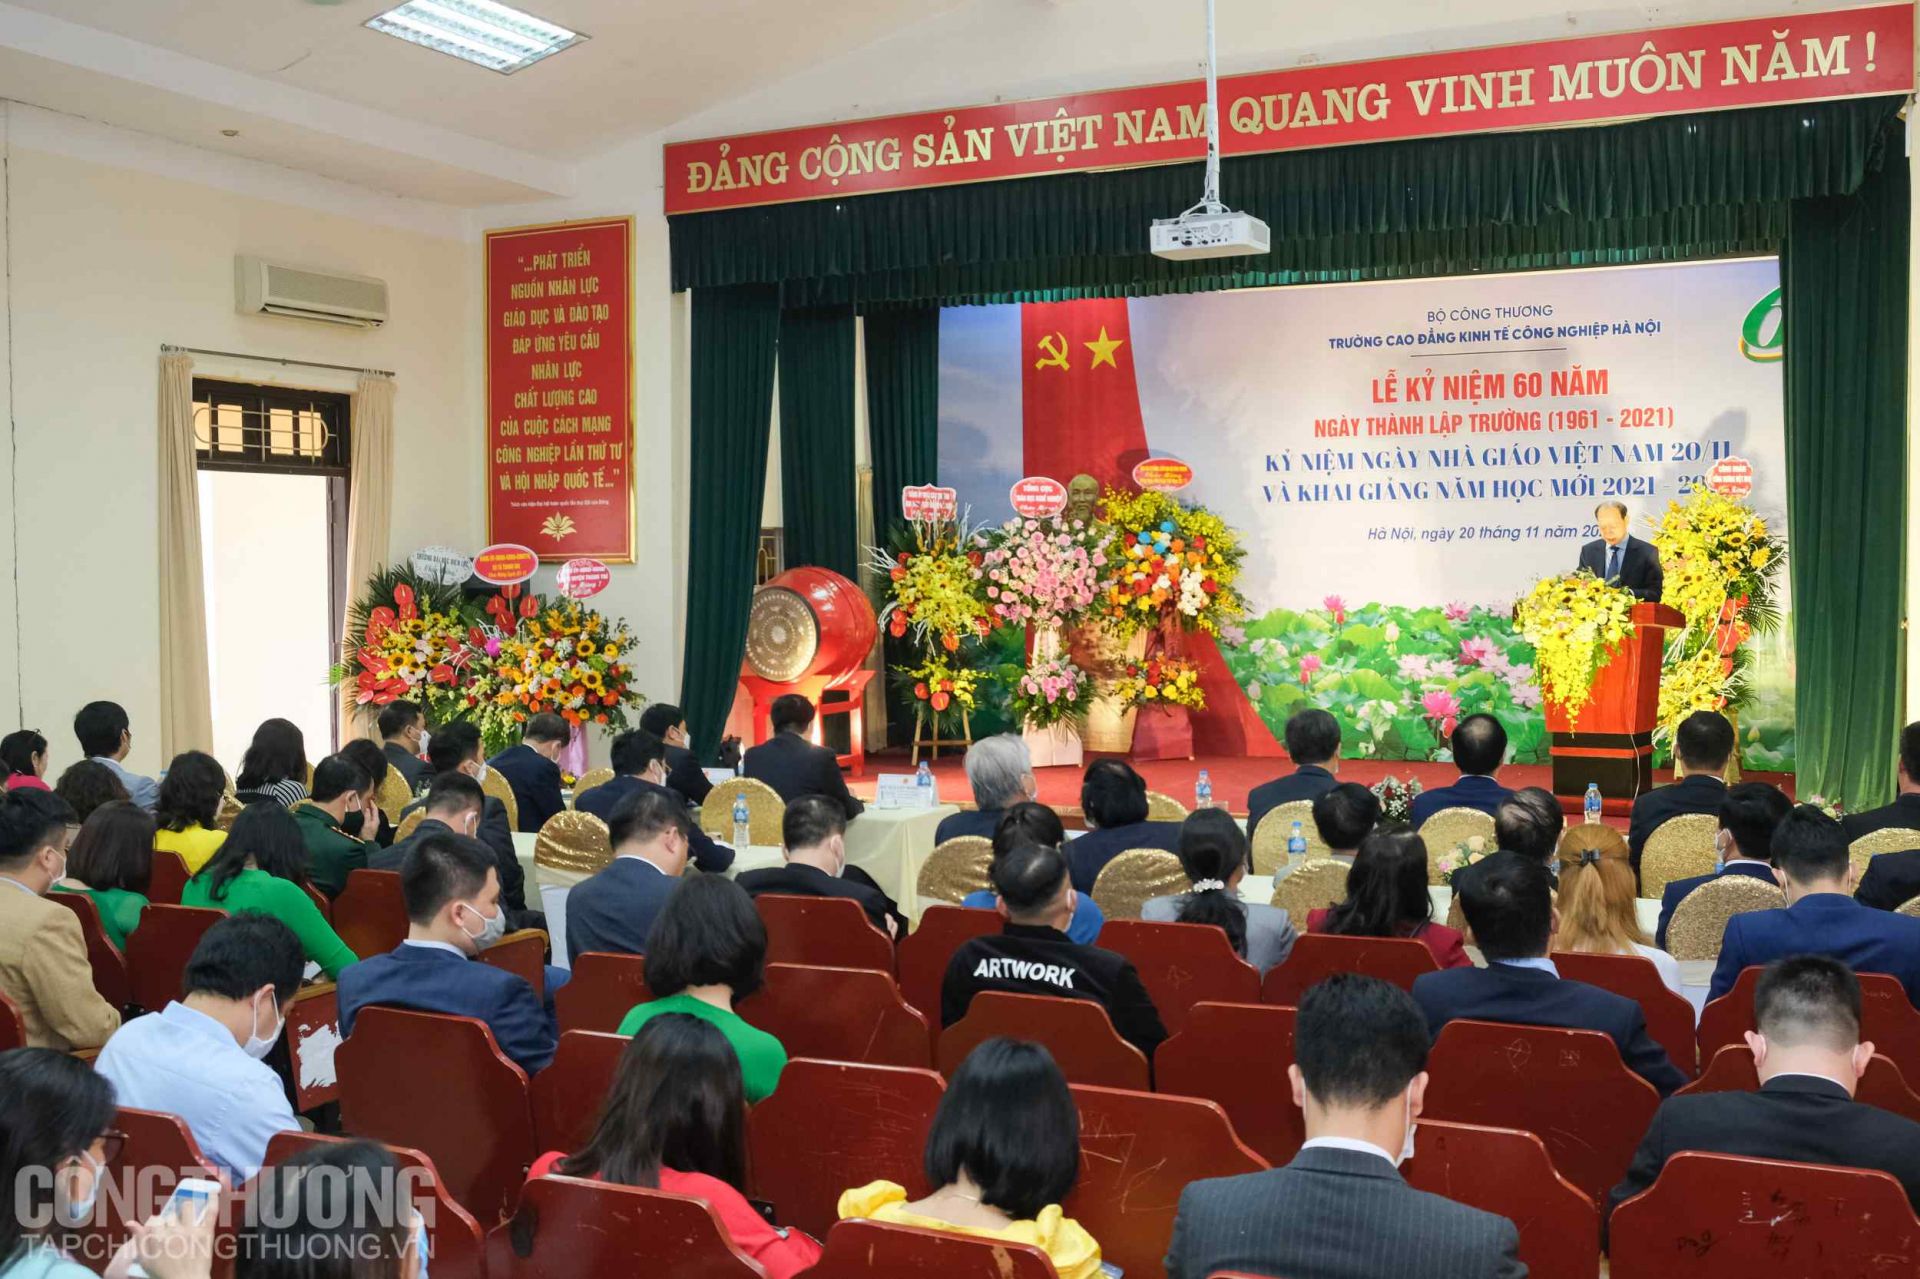 Toàn cảnh Lễ kỷ niệm 60 năm thành lập trường, Ngày Nhà giáo Việt Nam (20/11) và khai giảng năm học mới 2021-2022 Trường Cao đẳng Kinh tế Công nghiệp Hà Nội